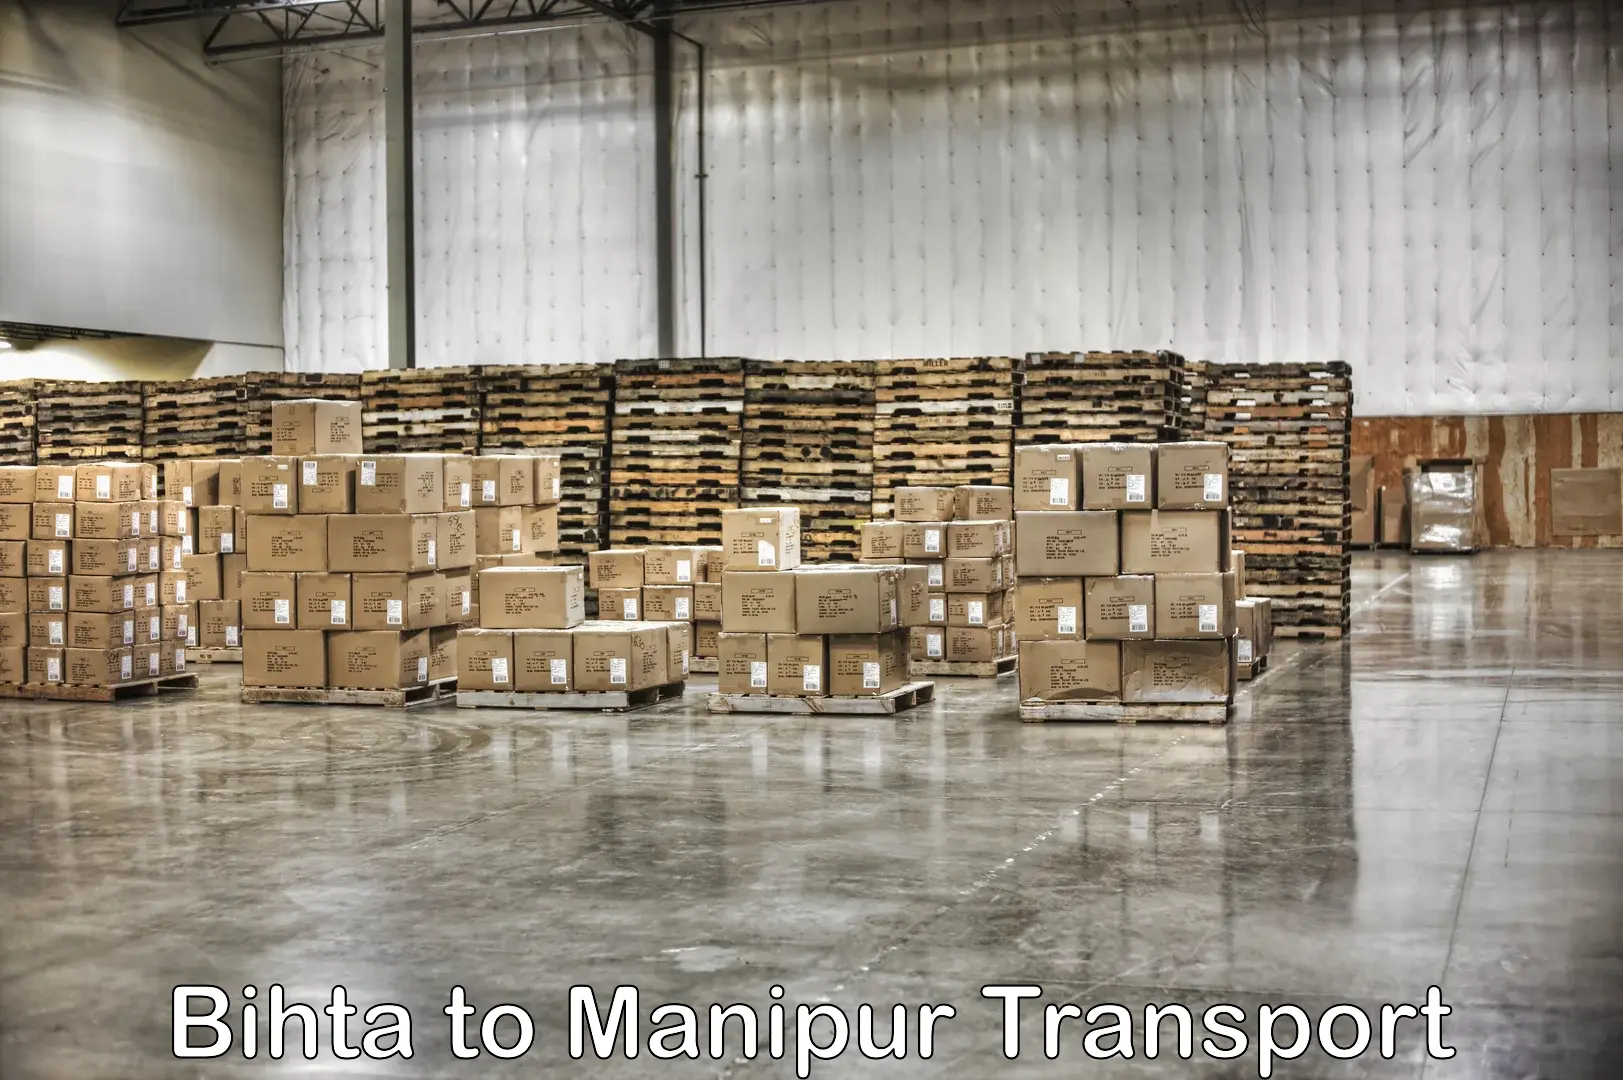 Online transport service Bihta to Manipur